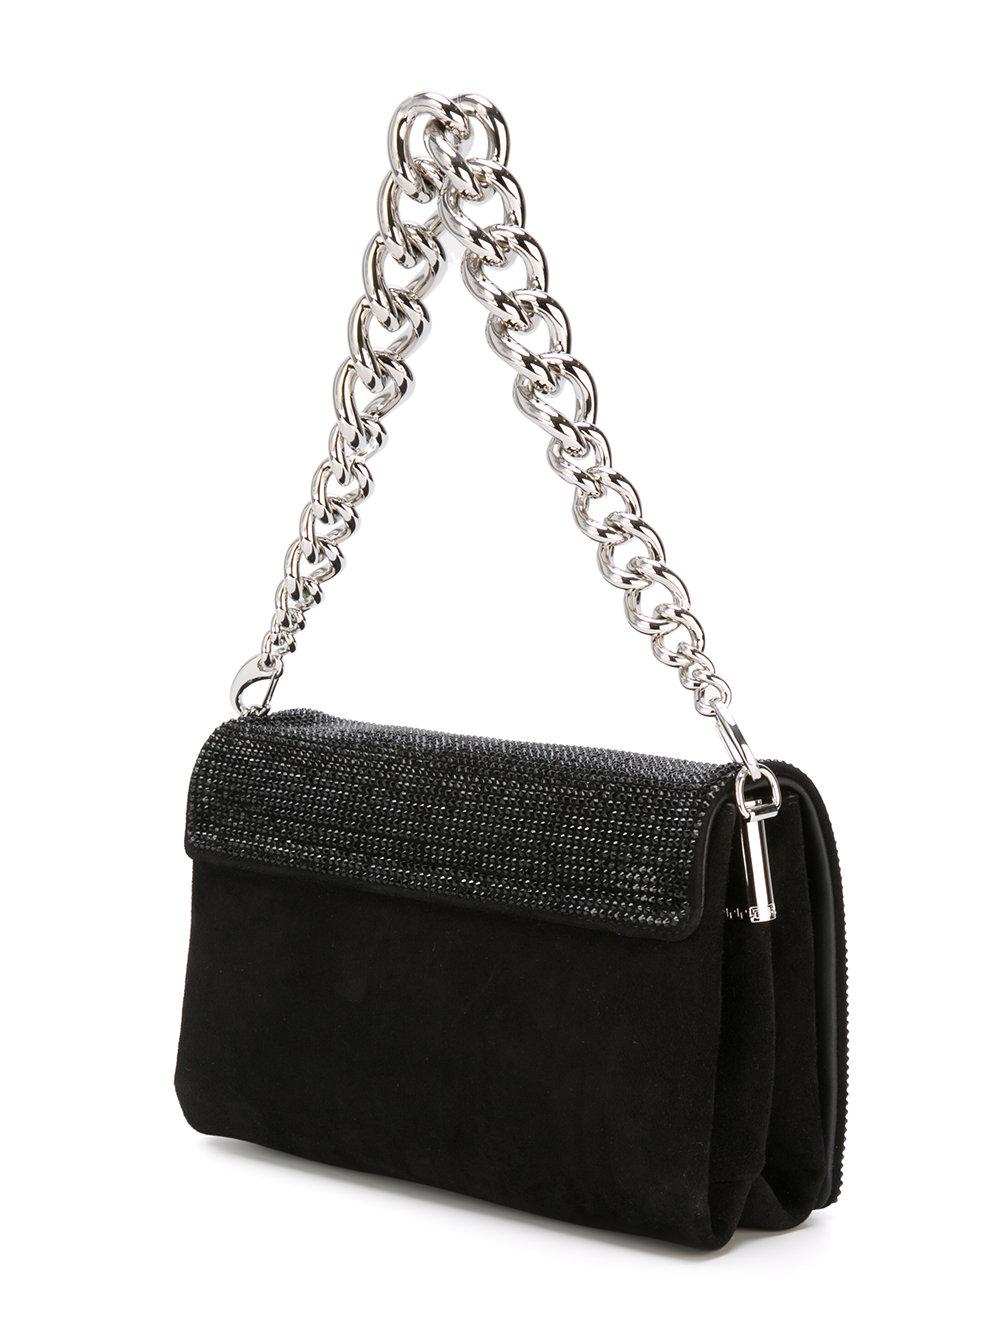 Lyst - Versace Sulthan Crystal Shoulder Bag in Black